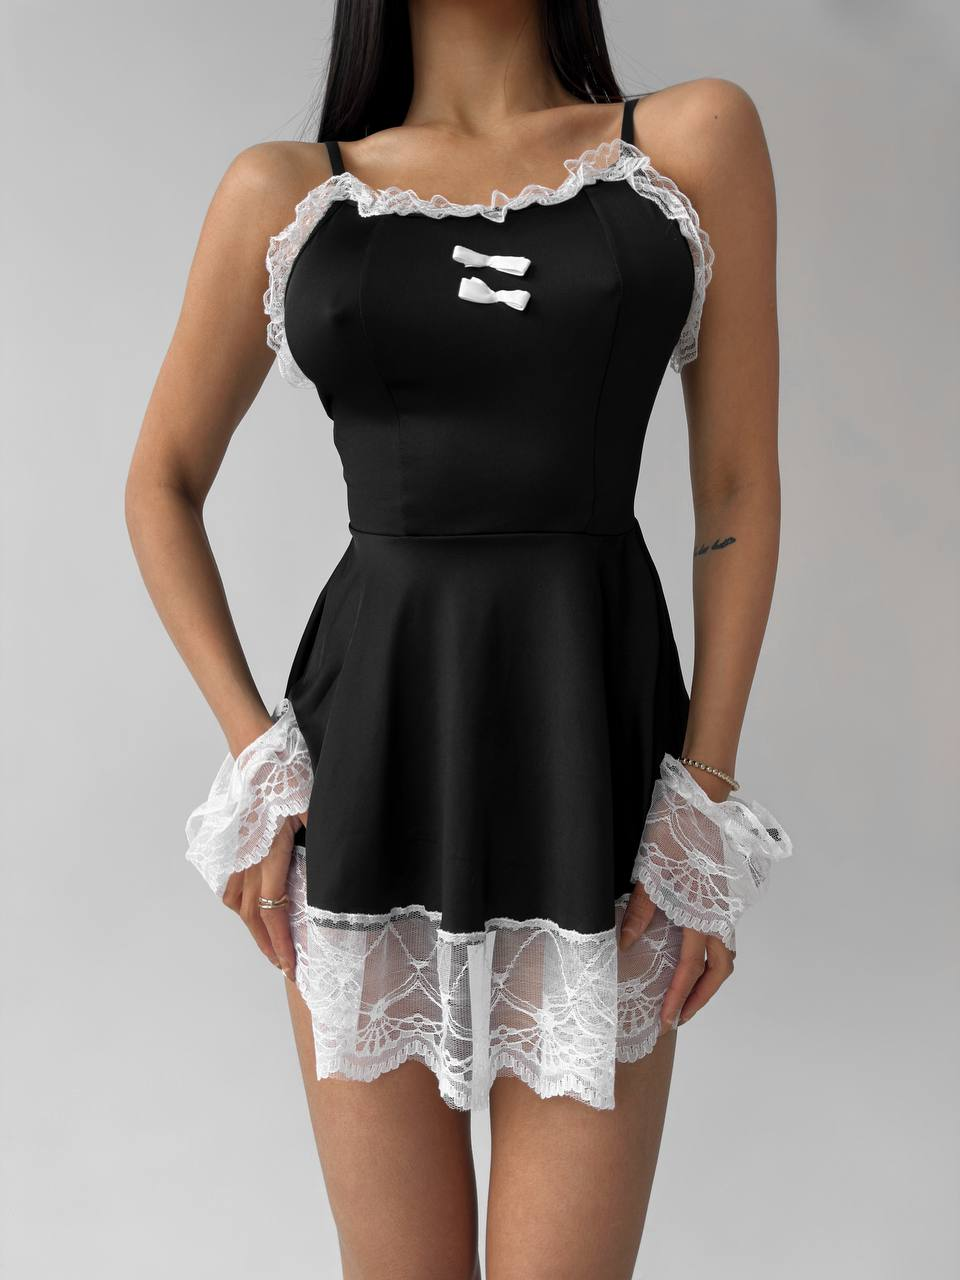 Еротичний жіночий костюм для рольових ігор покоївка офіціантка сукня обруч трусики мереживні манжети sex одяг